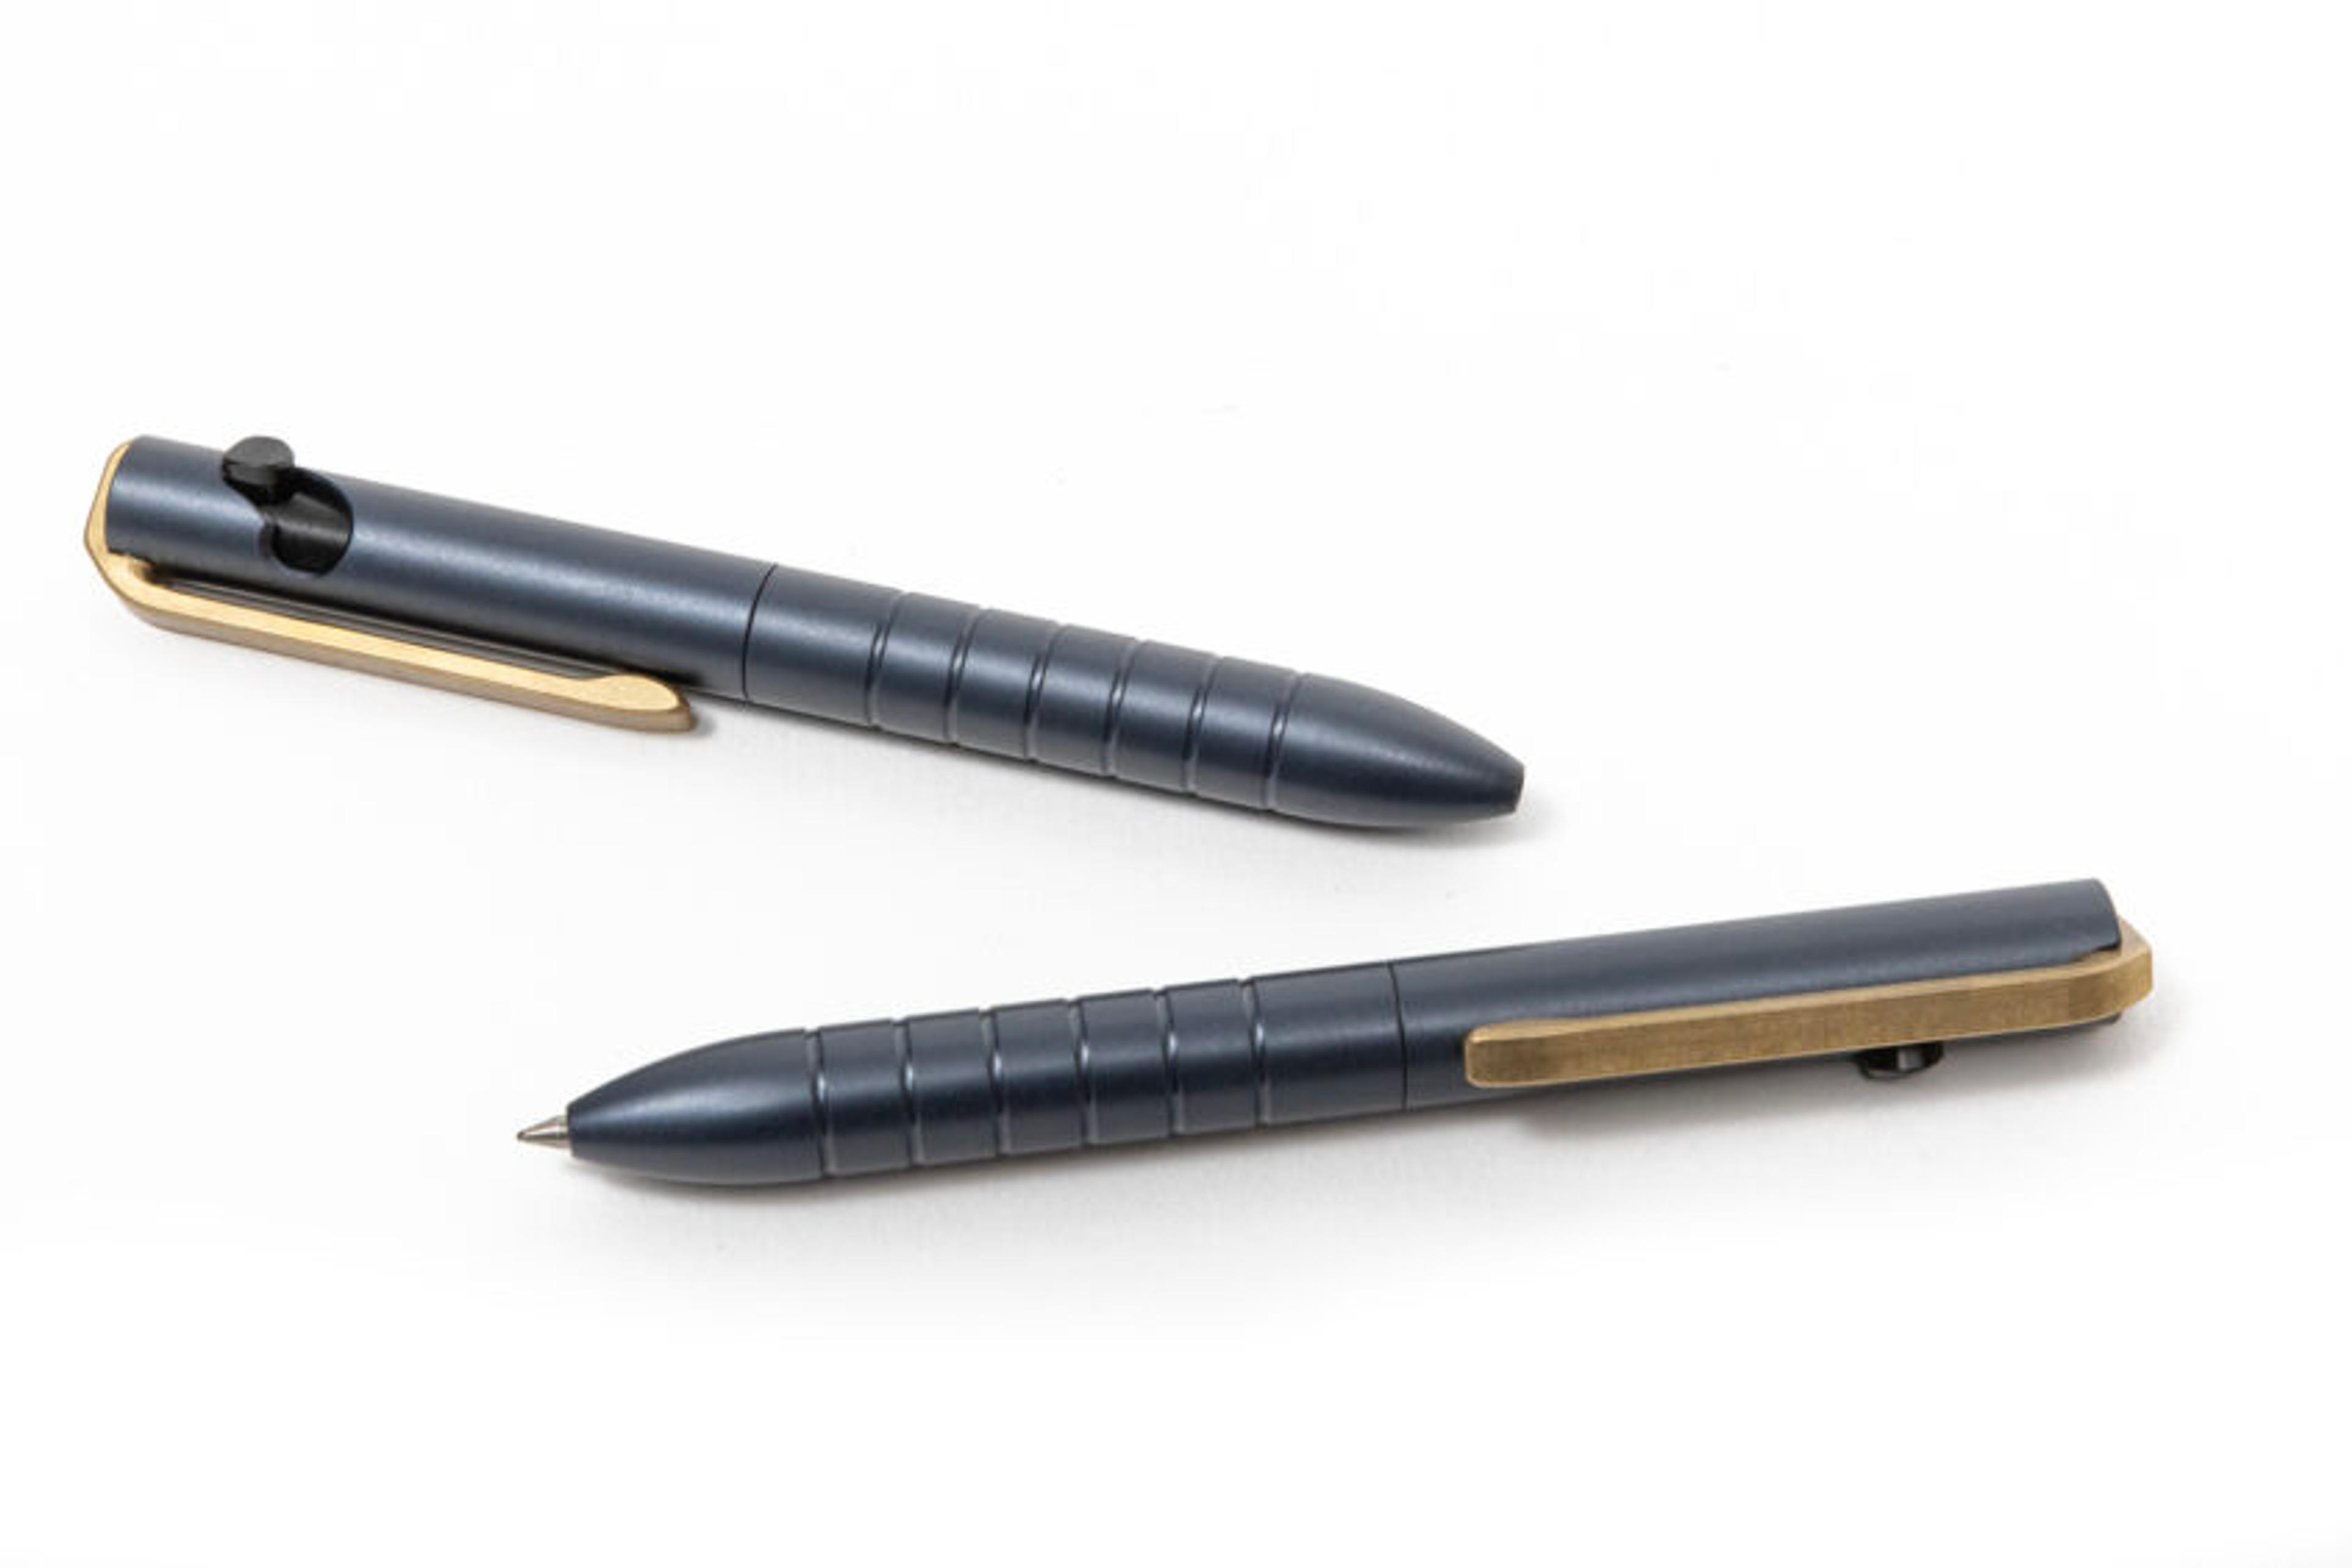 Thunderhead Pocket Modal Special Release | Karas Pen Co.